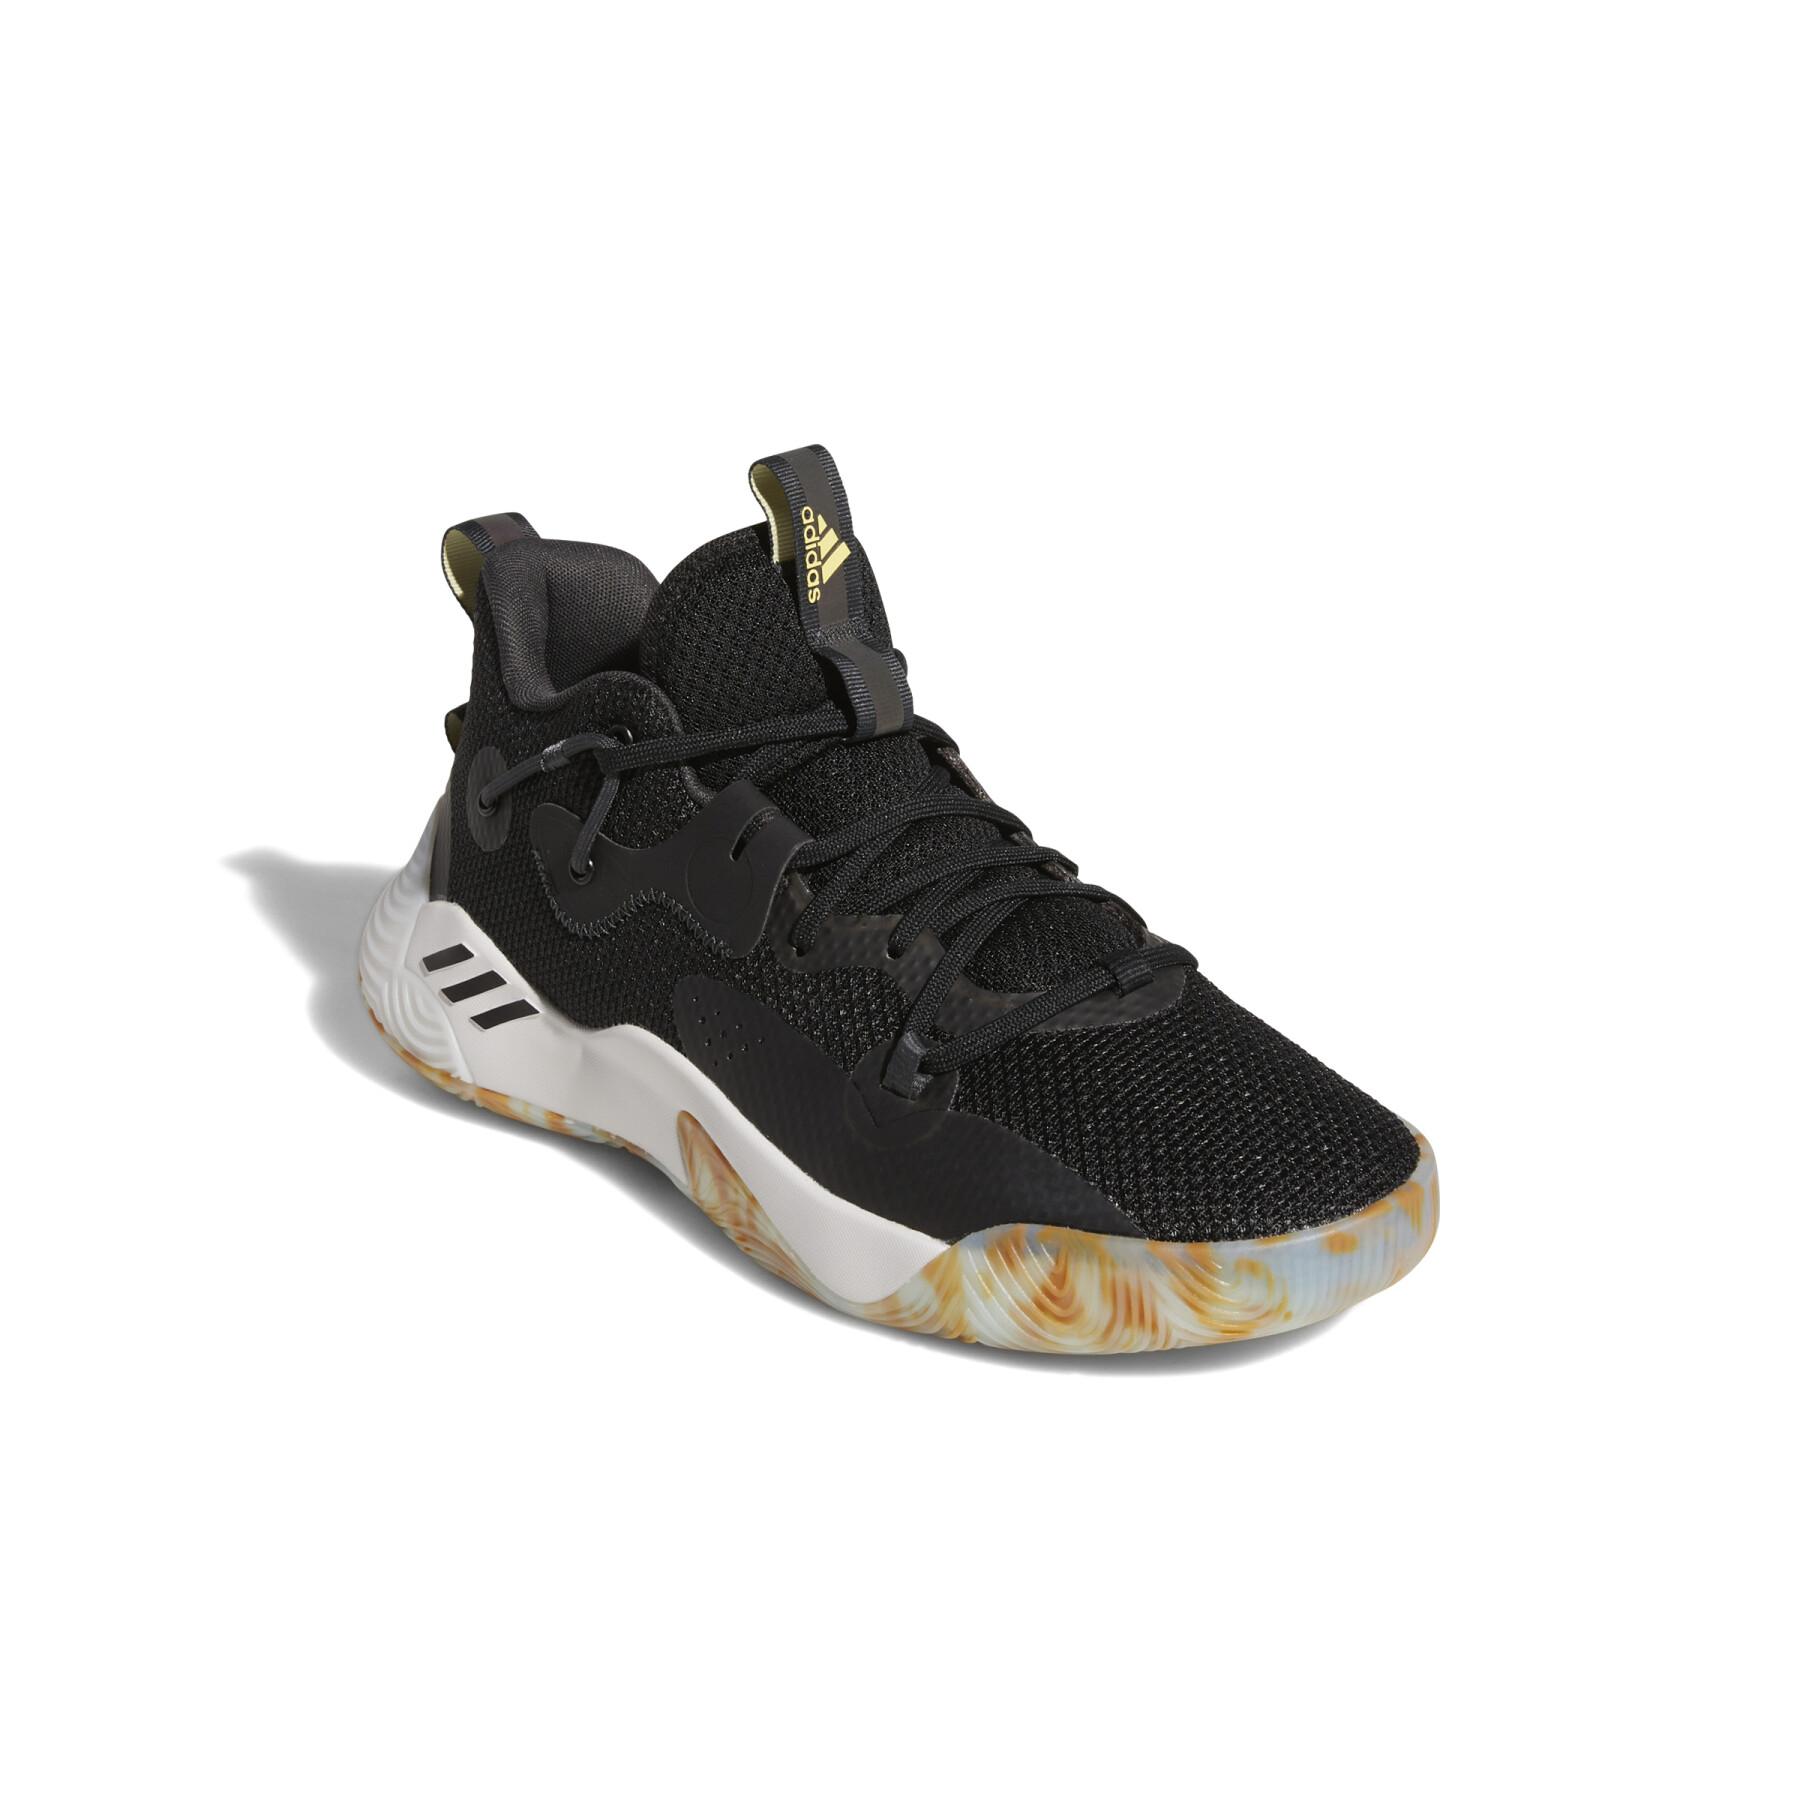 Basketball shoes adidas Harden Stepback 3